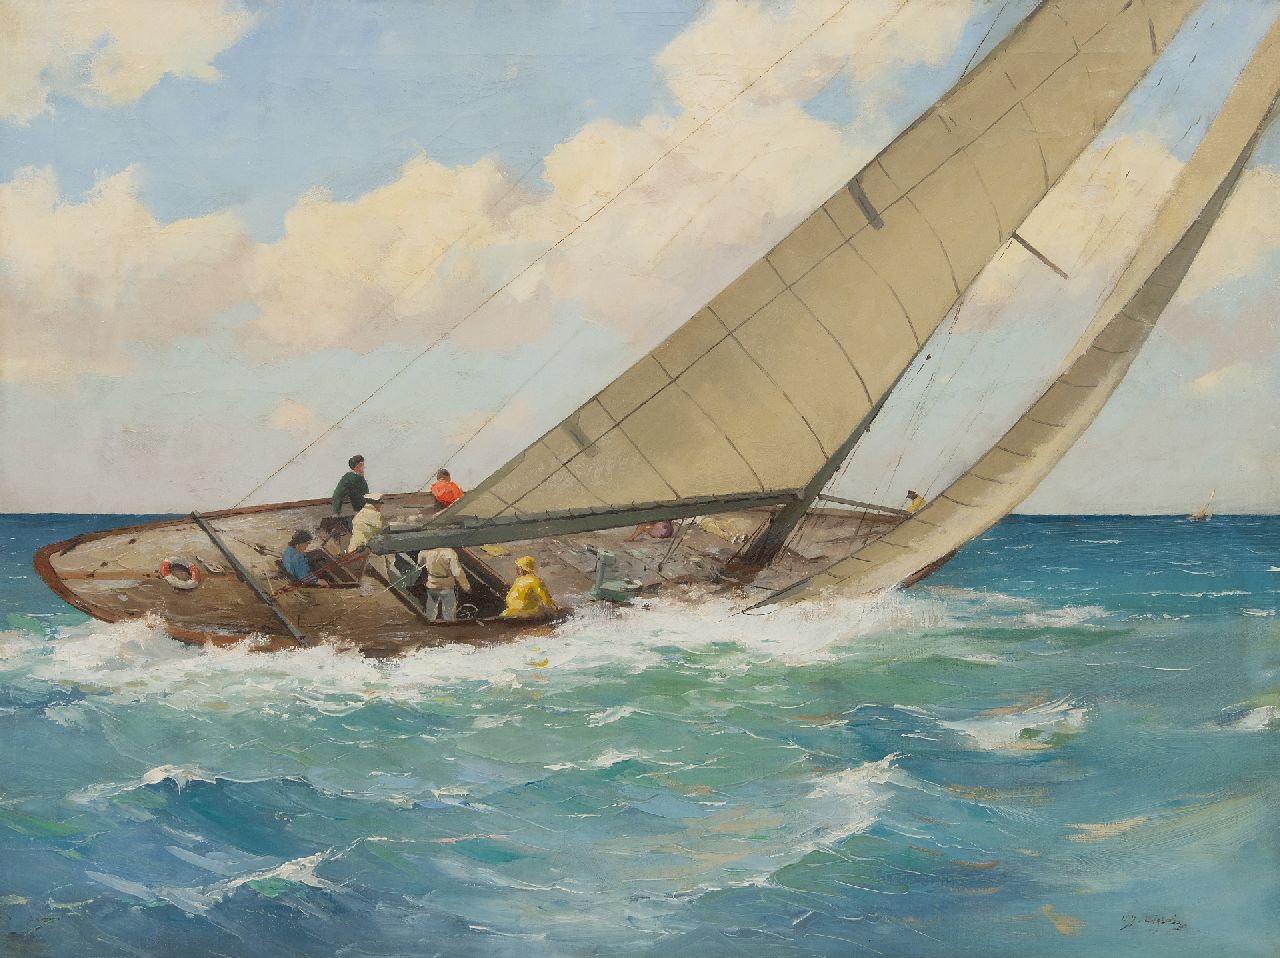 Ligtelijn E.J.  | Evert Jan Ligtelijn, Zeilschip in actie, olieverf op doek 60,2 x 79,6 cm, gesigneerd rechtsonder